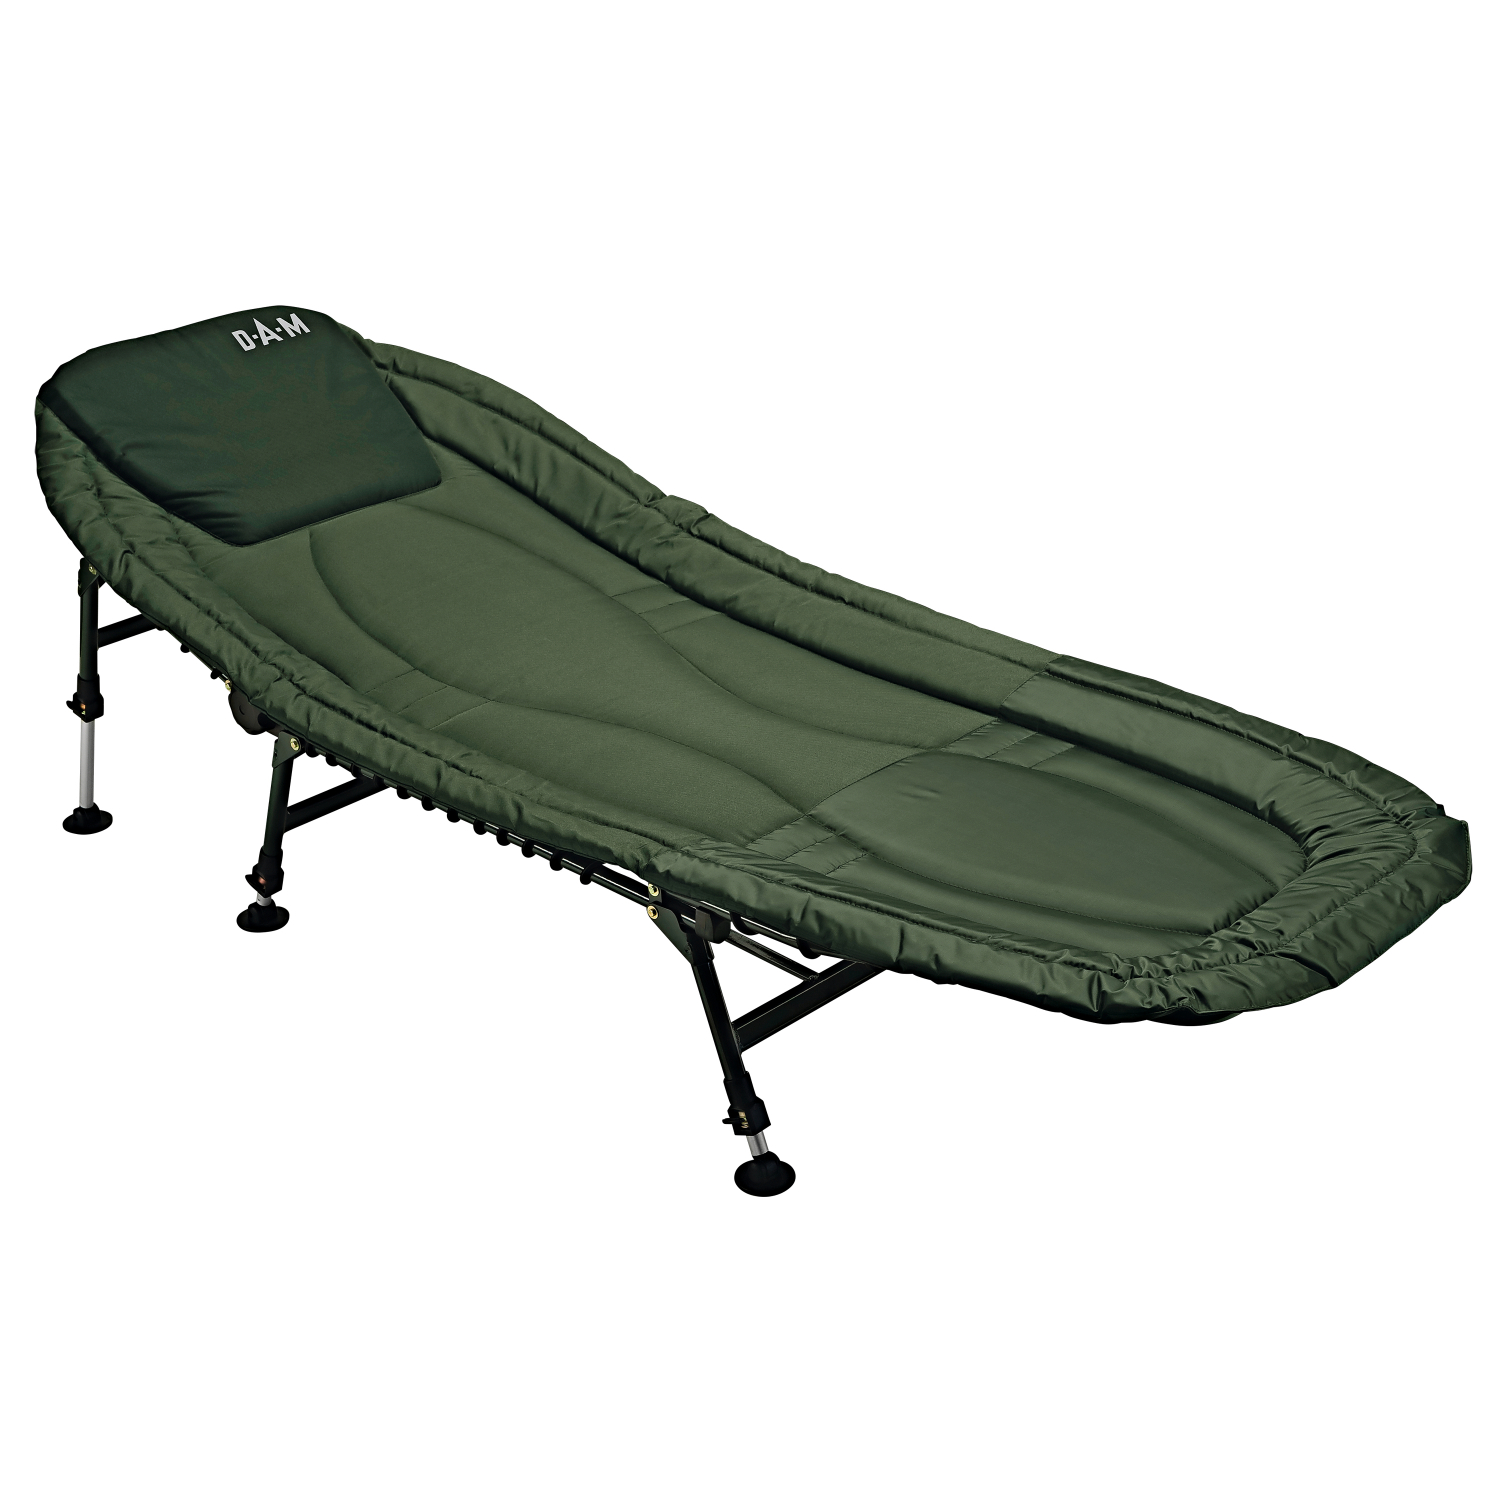 DAM DAM Bedchair Six-Leg Alu Carped Lounger 